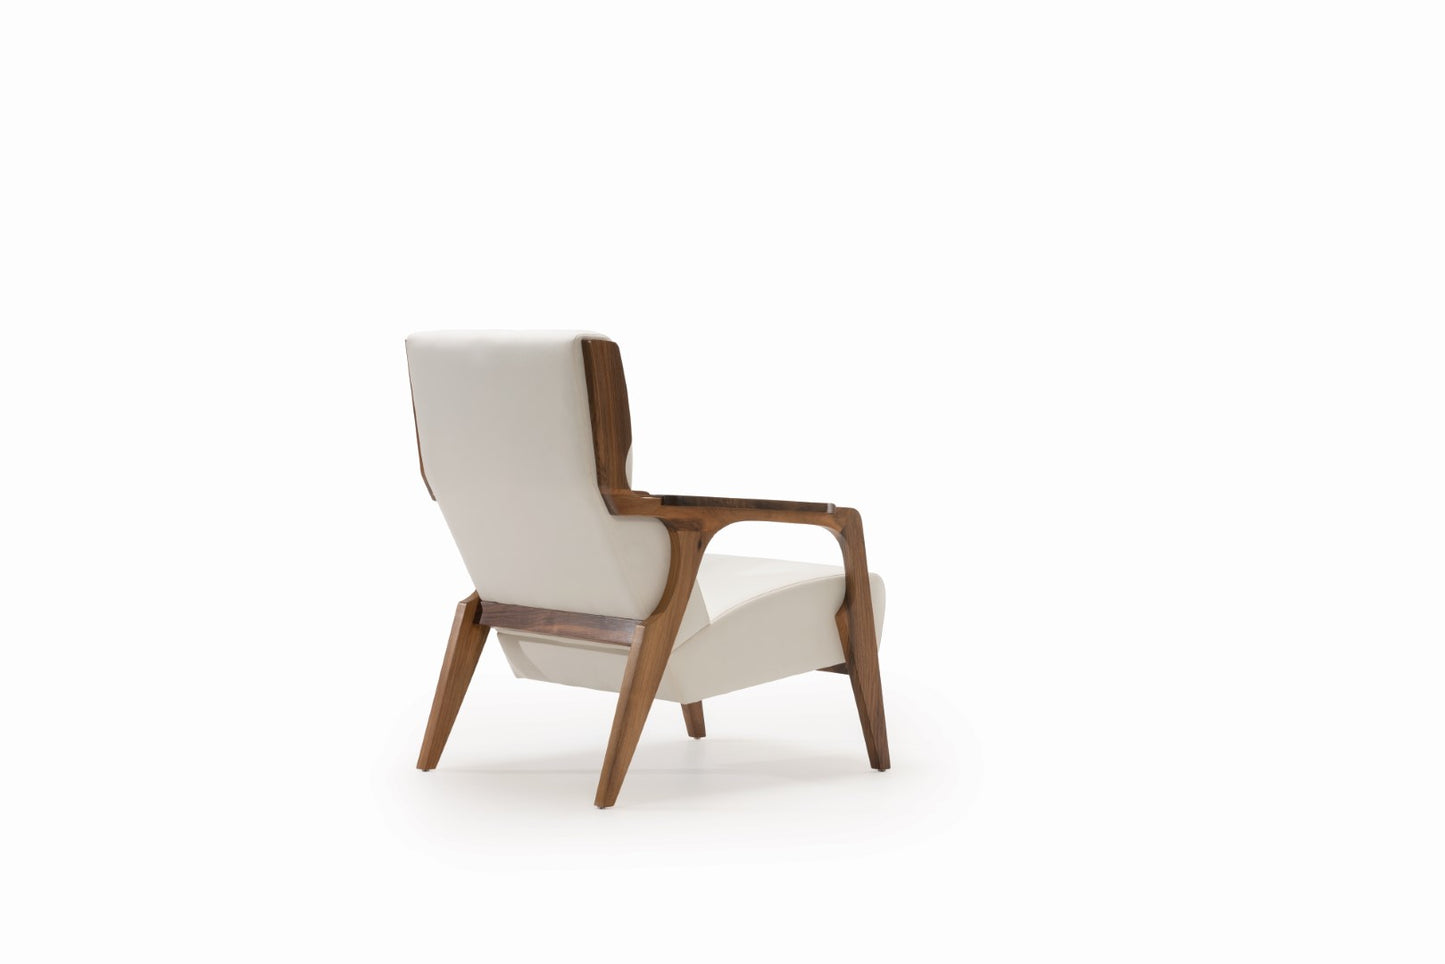 Esma Lounge Chair - Bone